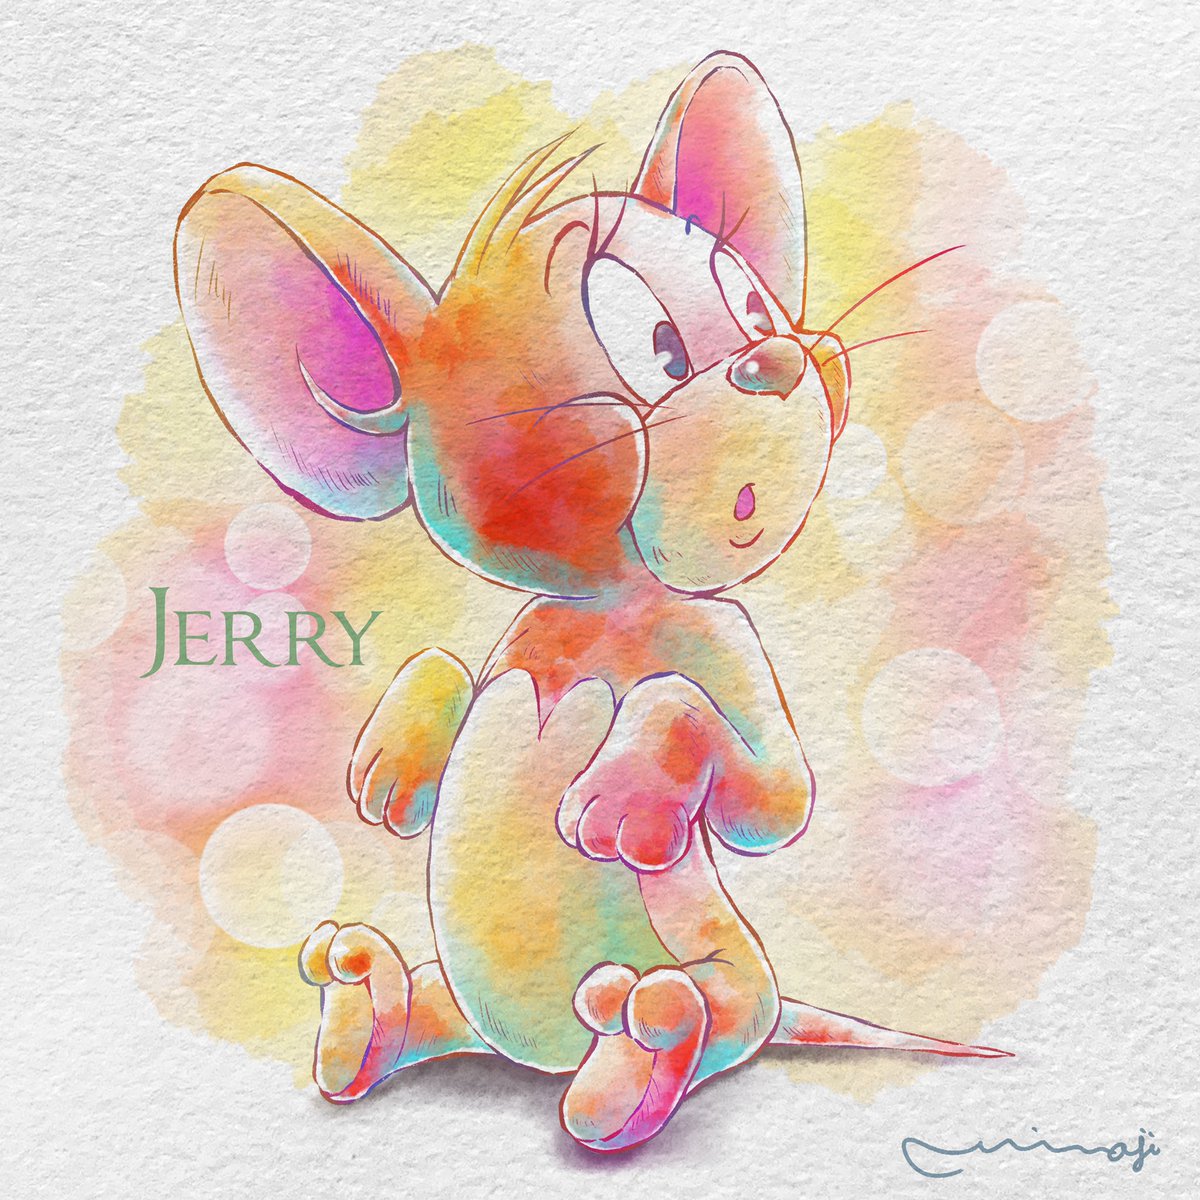 Miwajiアレンジでジェリーを描きました まつ毛がとっても可愛いジェリーに Miwaji 多忙中 のイラスト